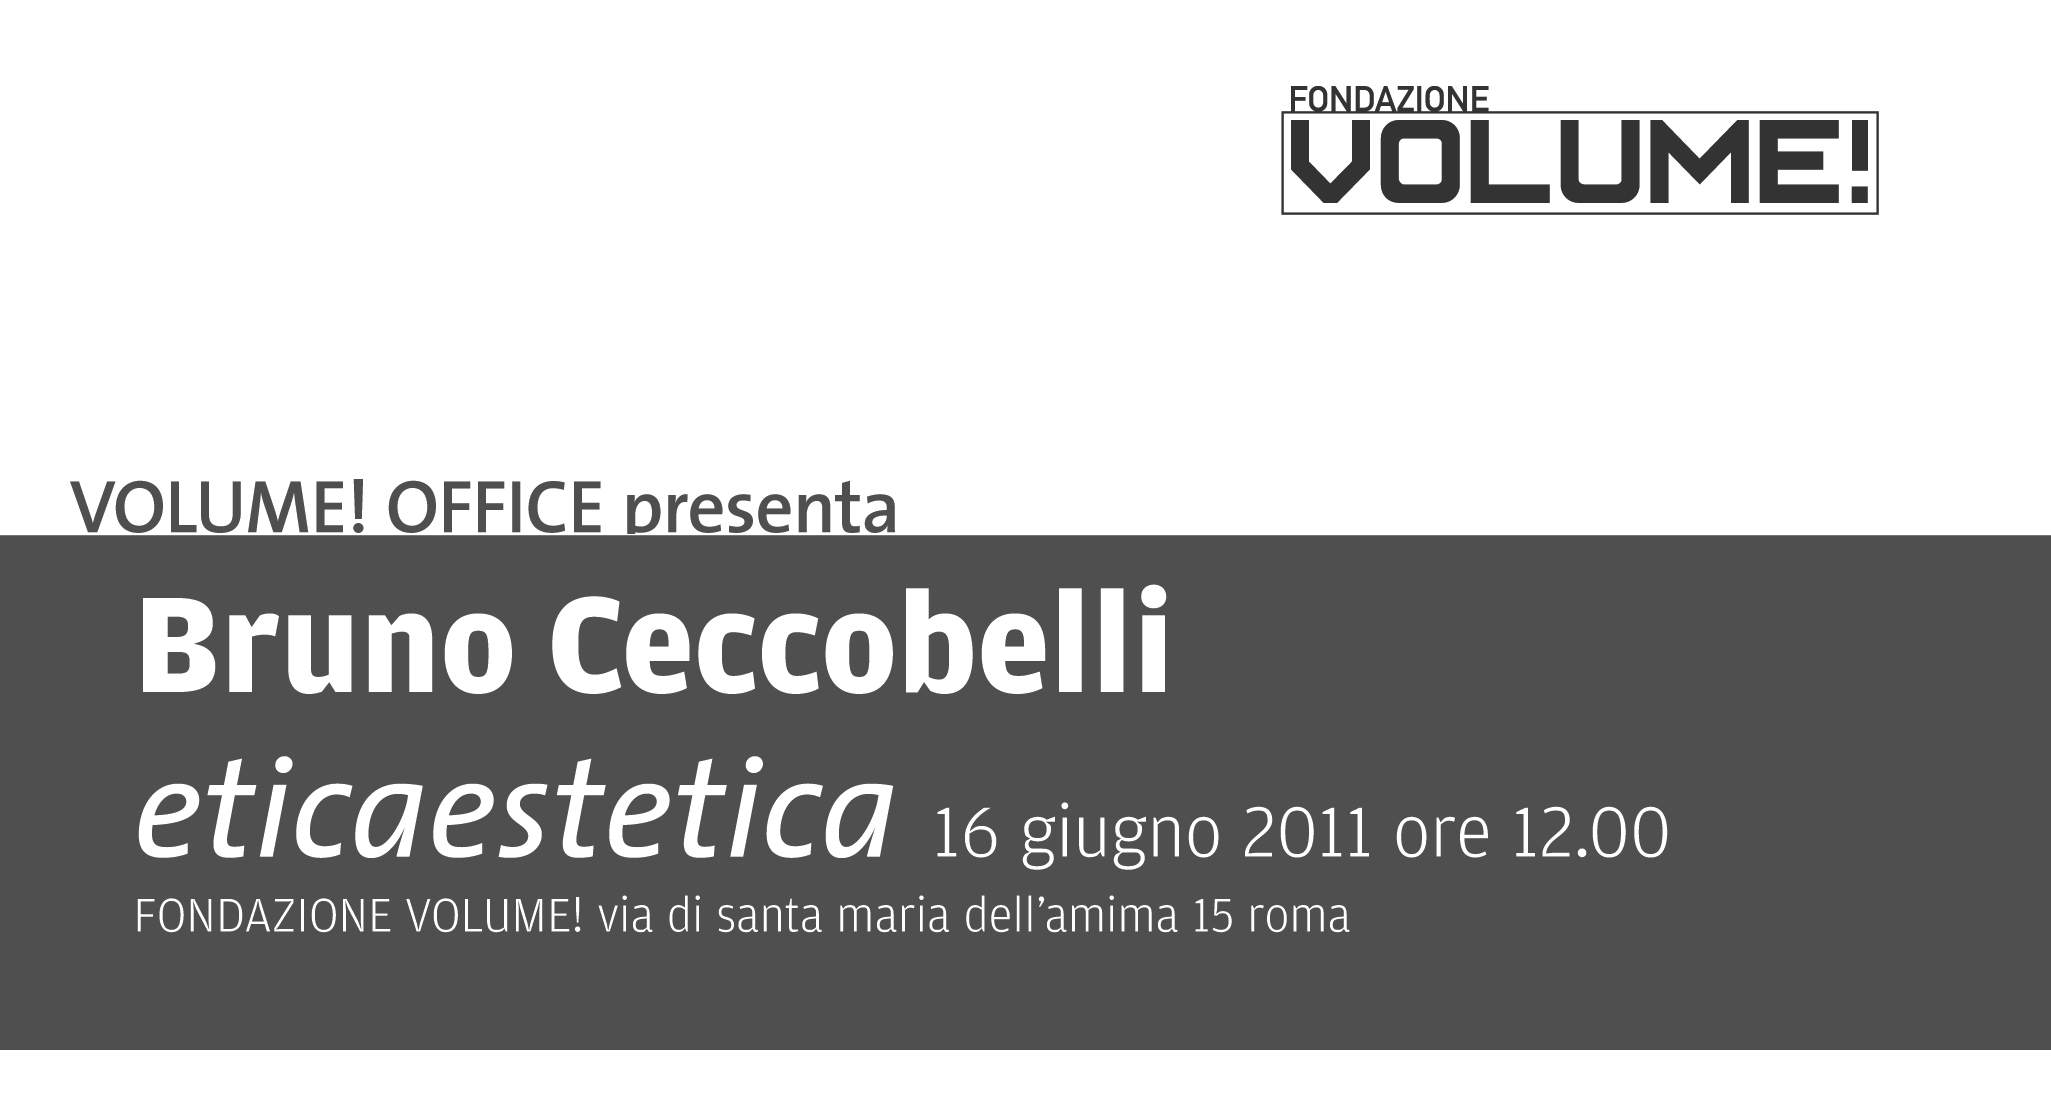 Bruno Ceccobelli - Eticaestetica